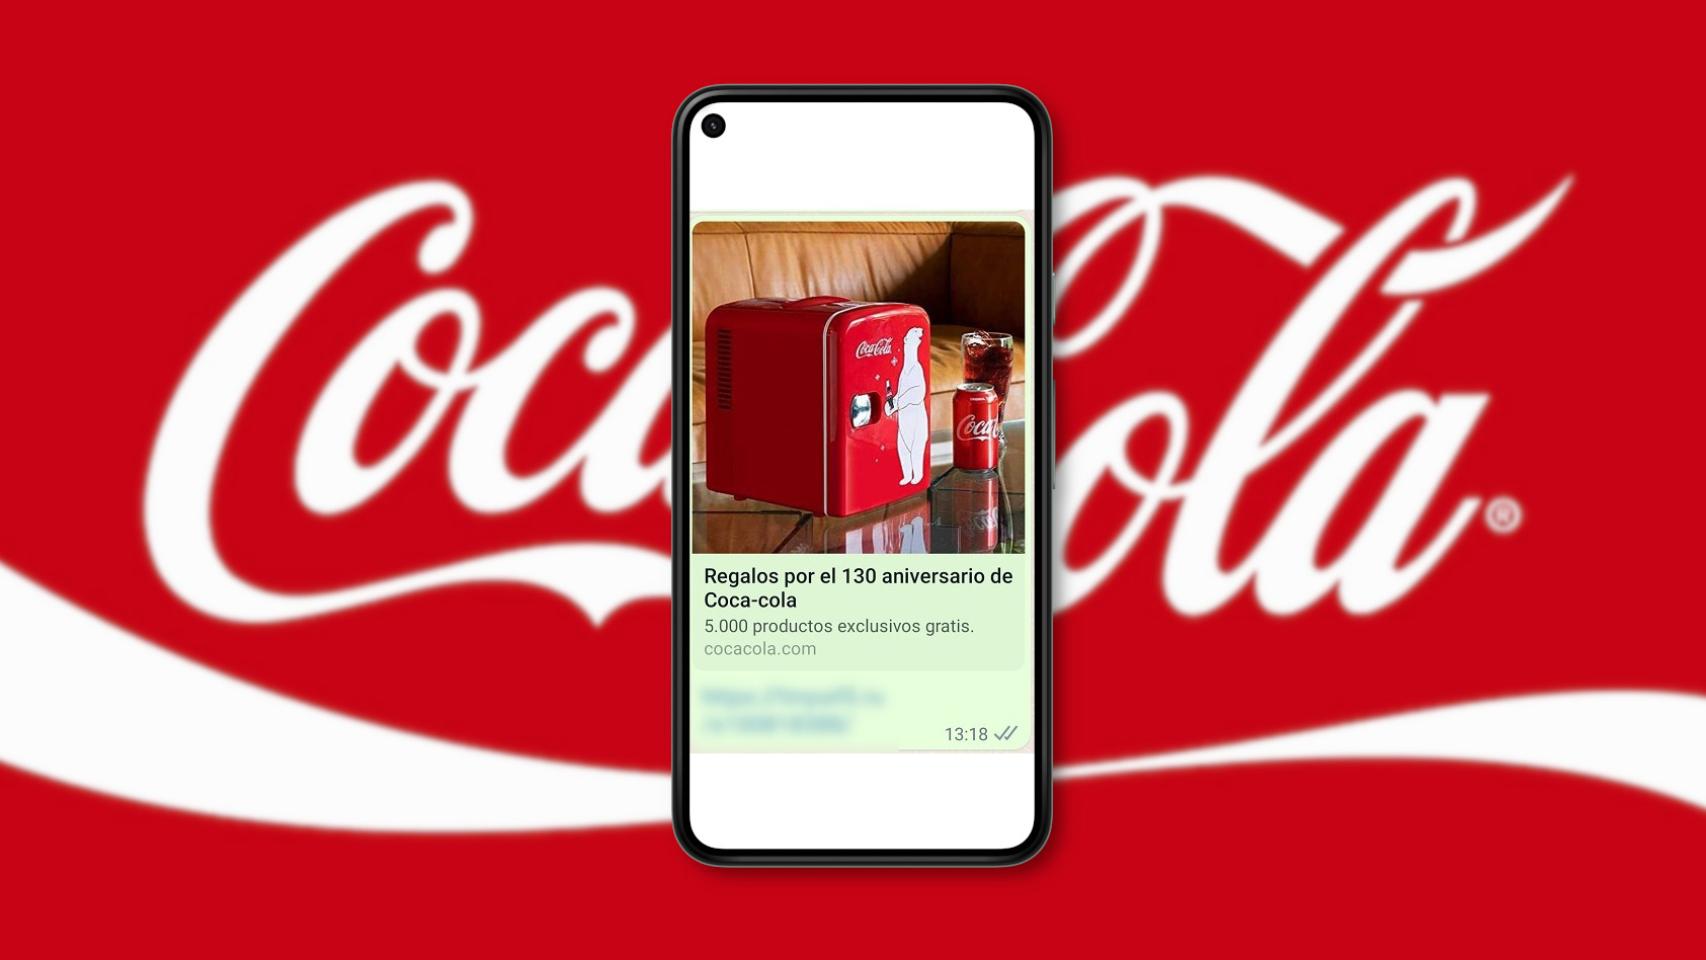 Te ha llegado el mensaje de las neveras de Coca Cola por Whatsapp? Cuidado,  están intentando robar tus datos